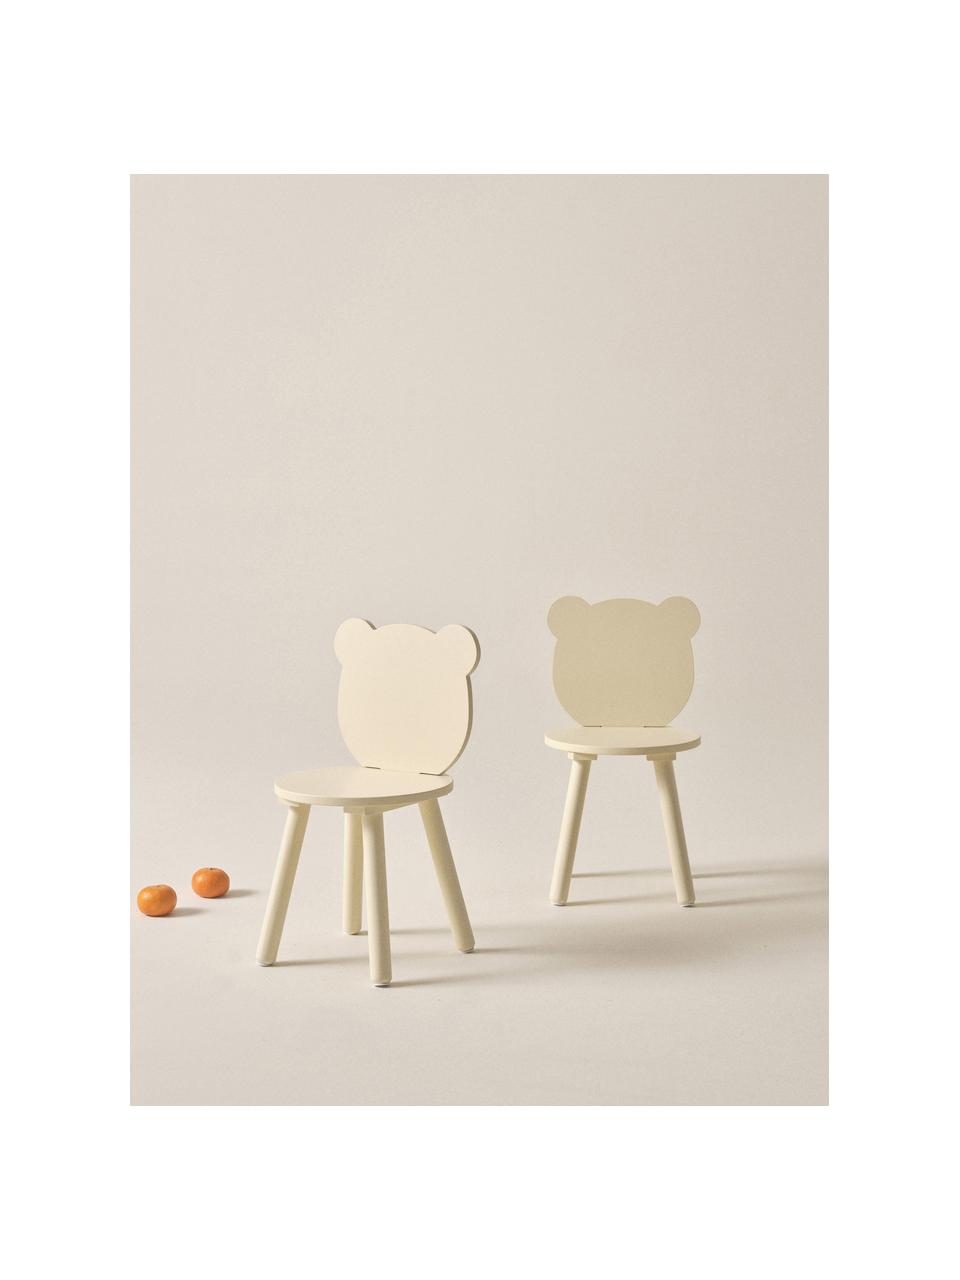 Krzesło z drewna dla dzieci Beary, 2 szt., Drewno sosnowe, płyta pilśniowa średniej gęstości (MDF) lakierowana, Żółty, S 30 x W 58 cm